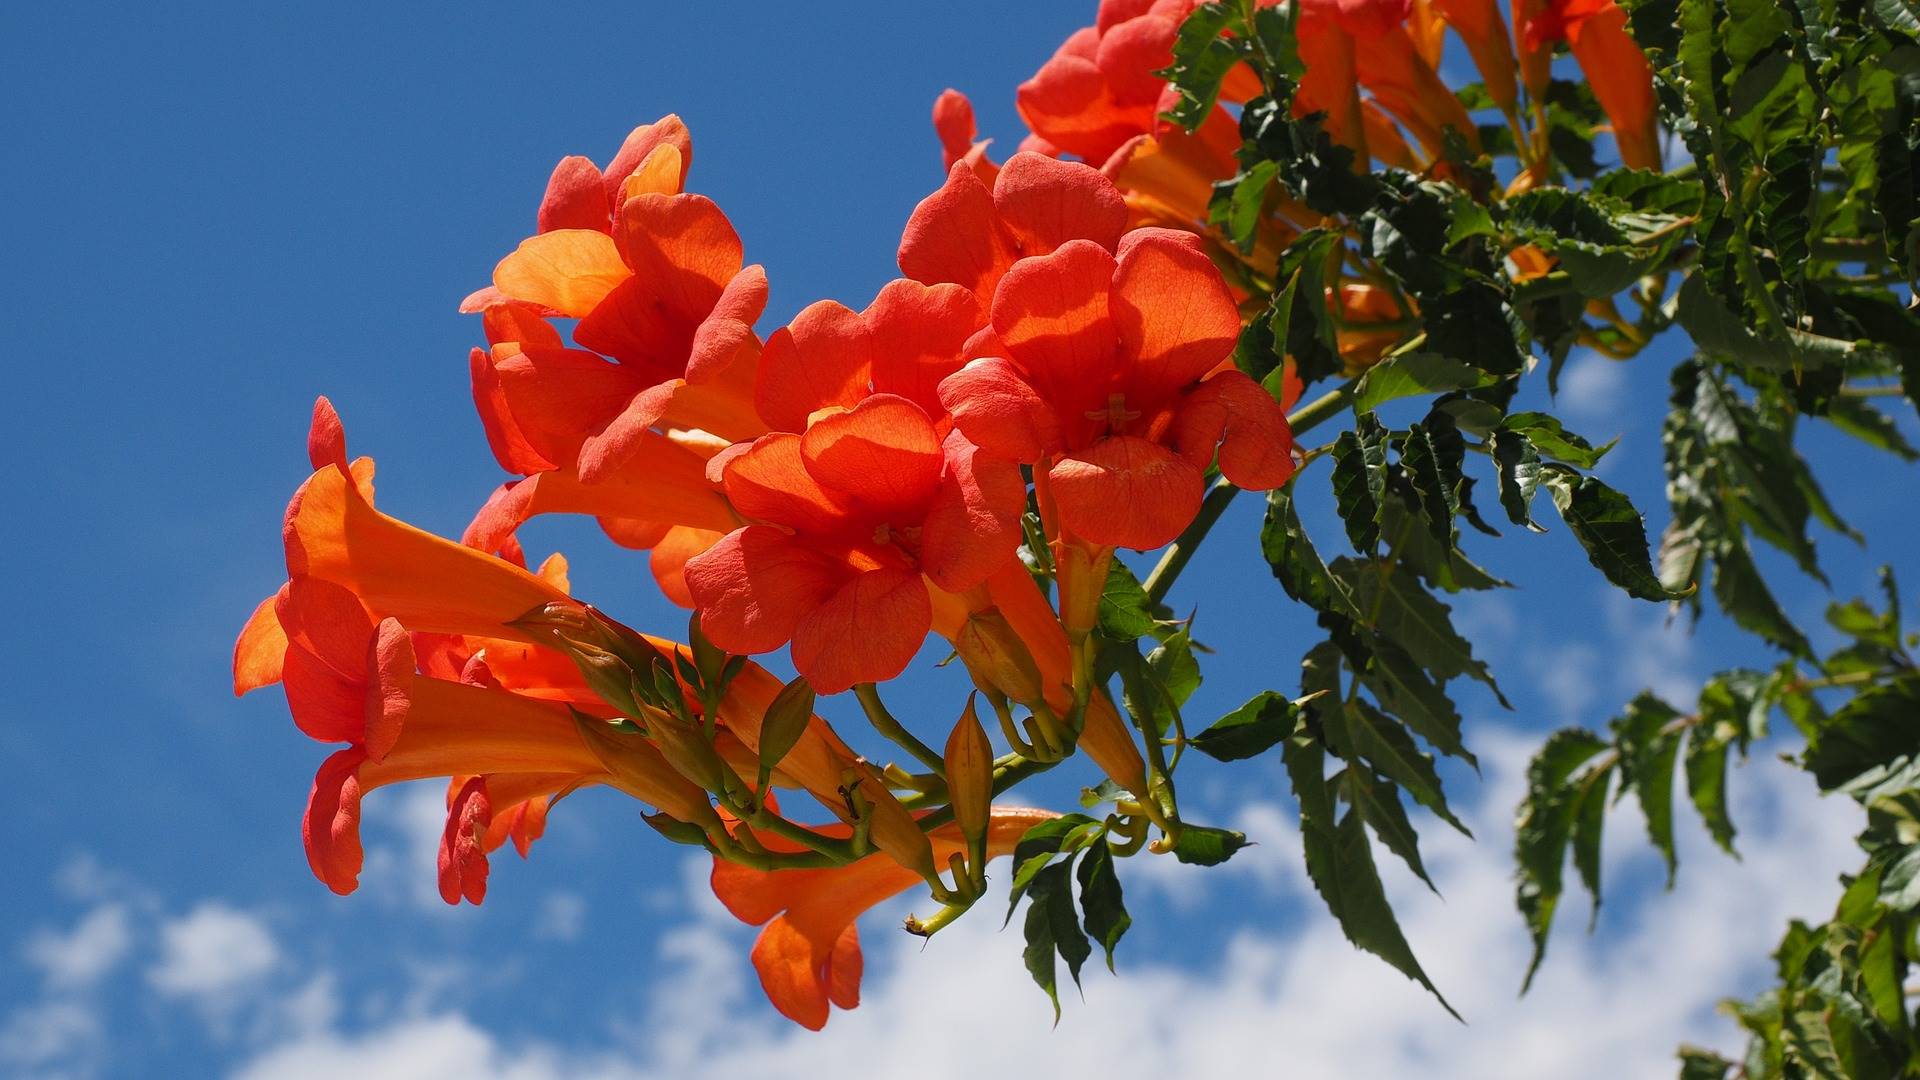 Plantas trepadoras y enredaderas: una planta trepadora llamada campsis radicans o trompeta trepadora naranja